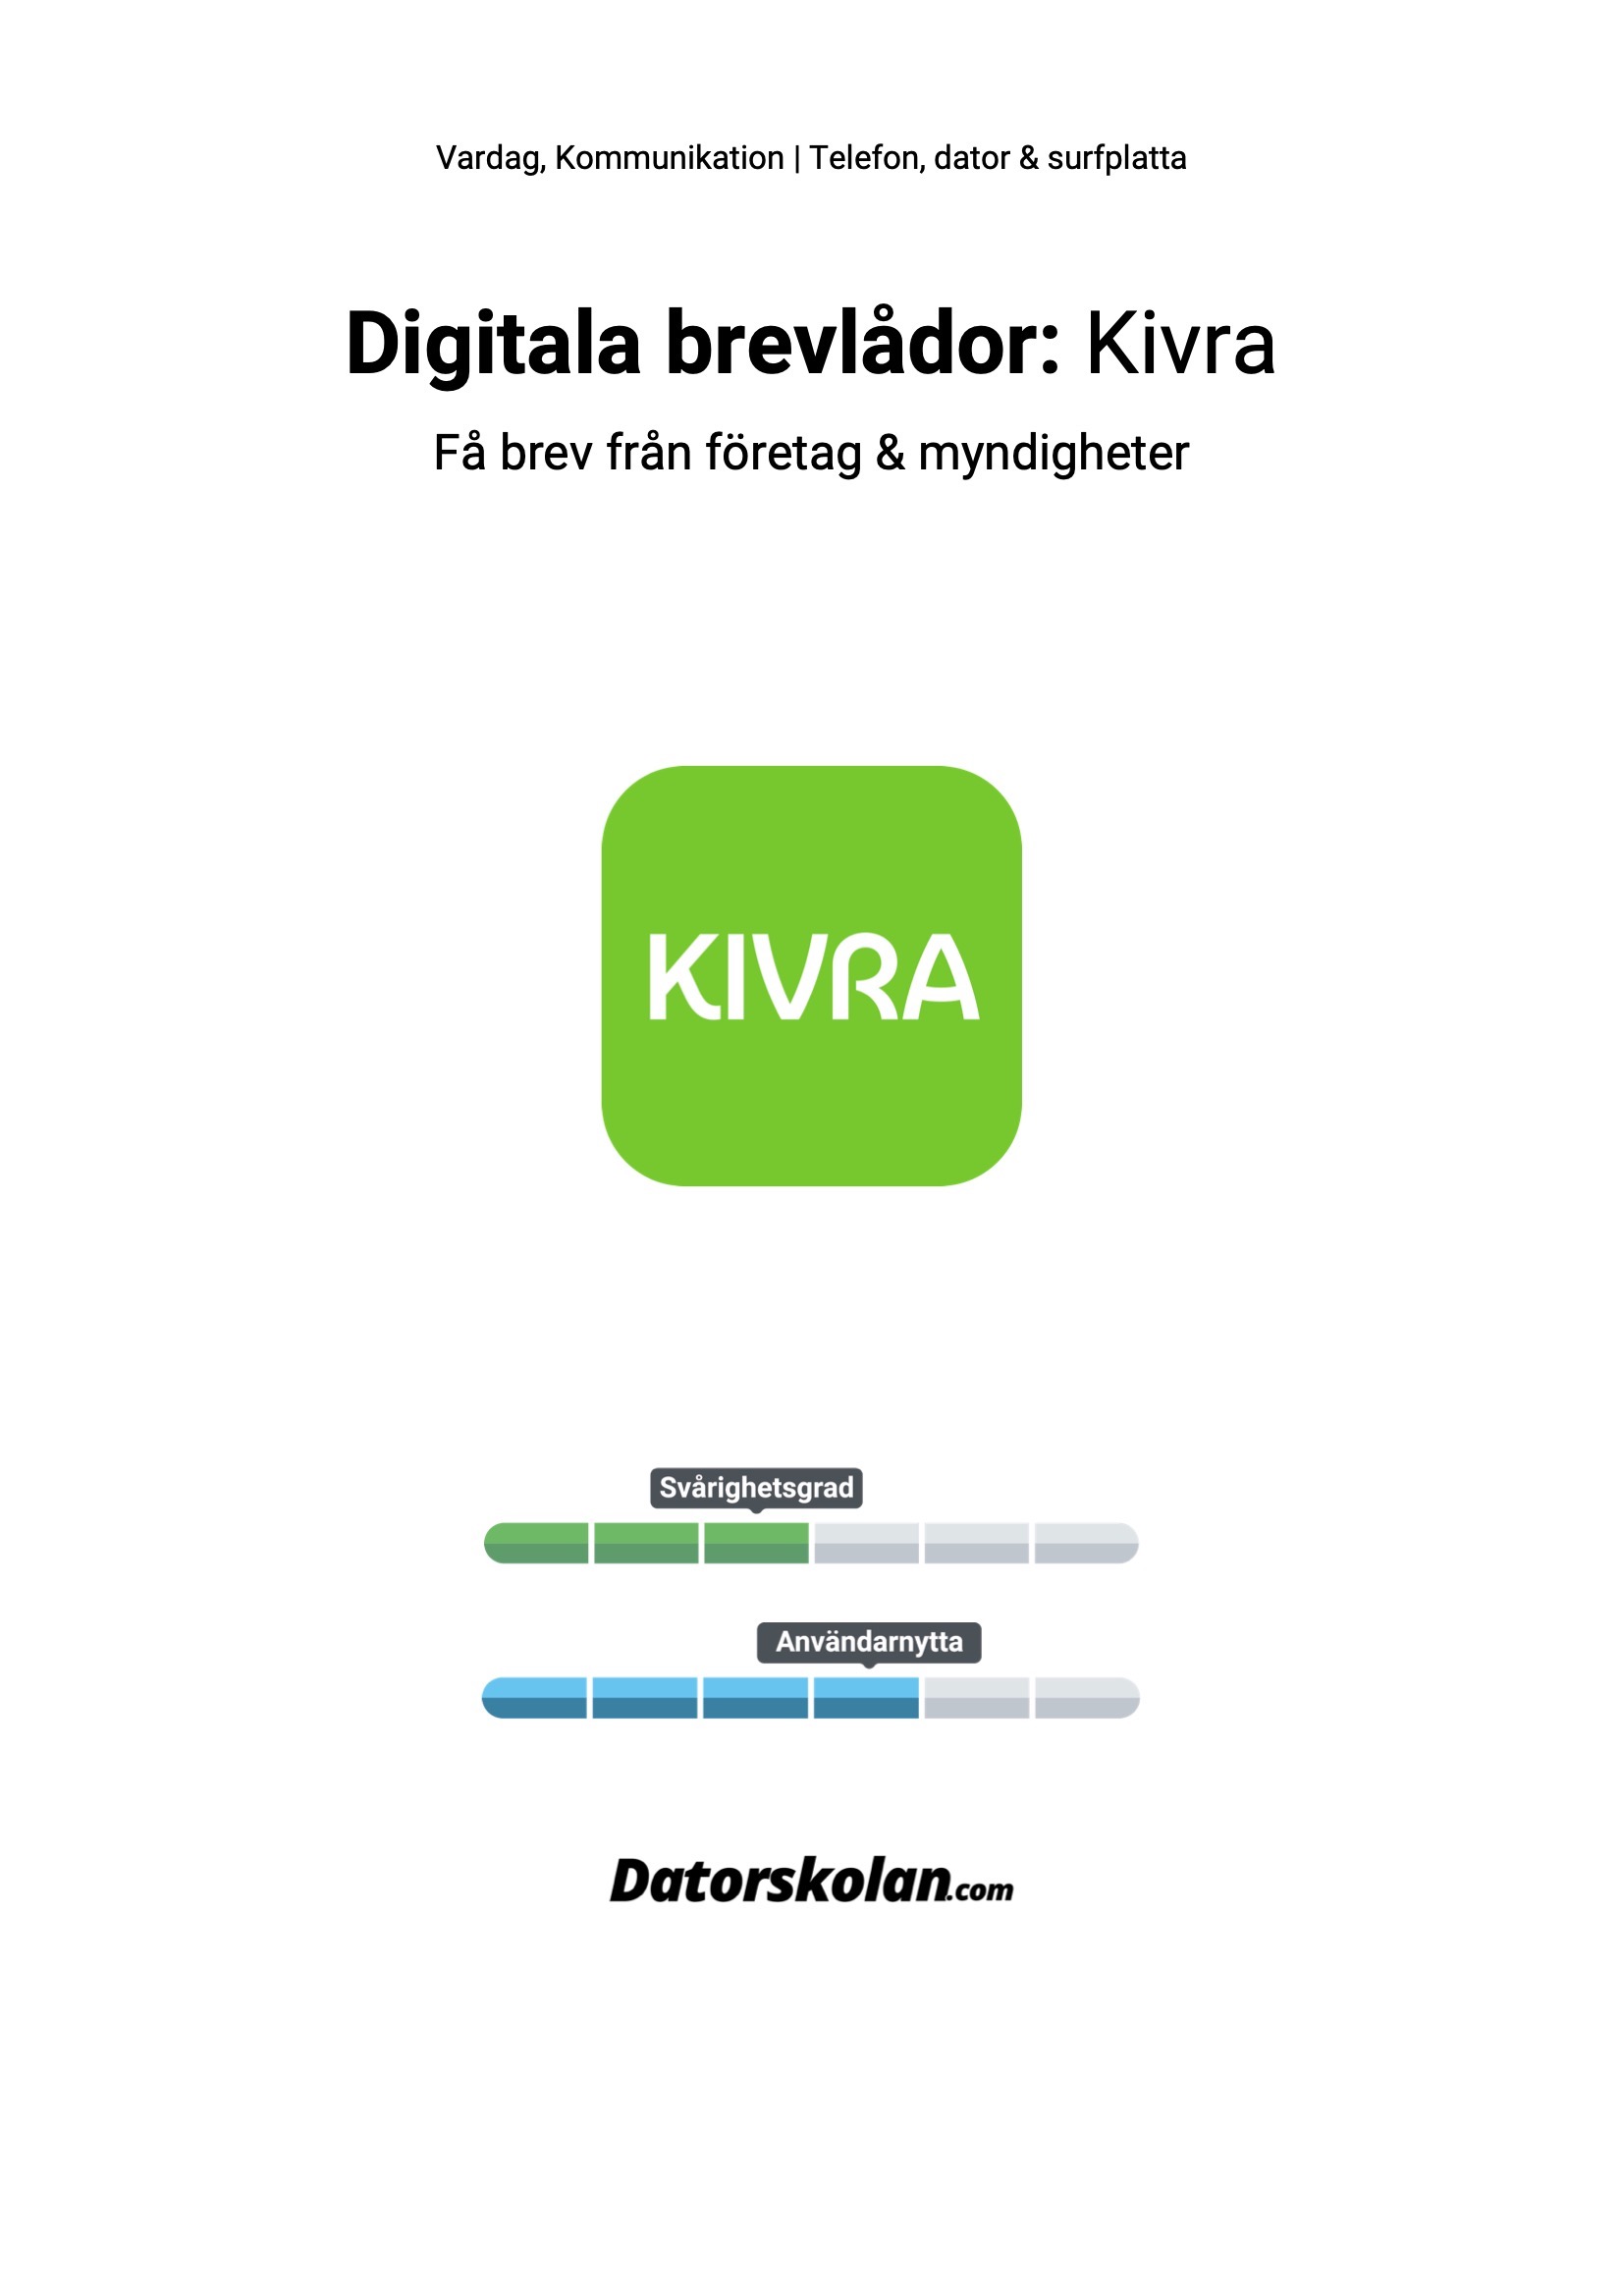 Framsidan av DigiGuiden om Kivra